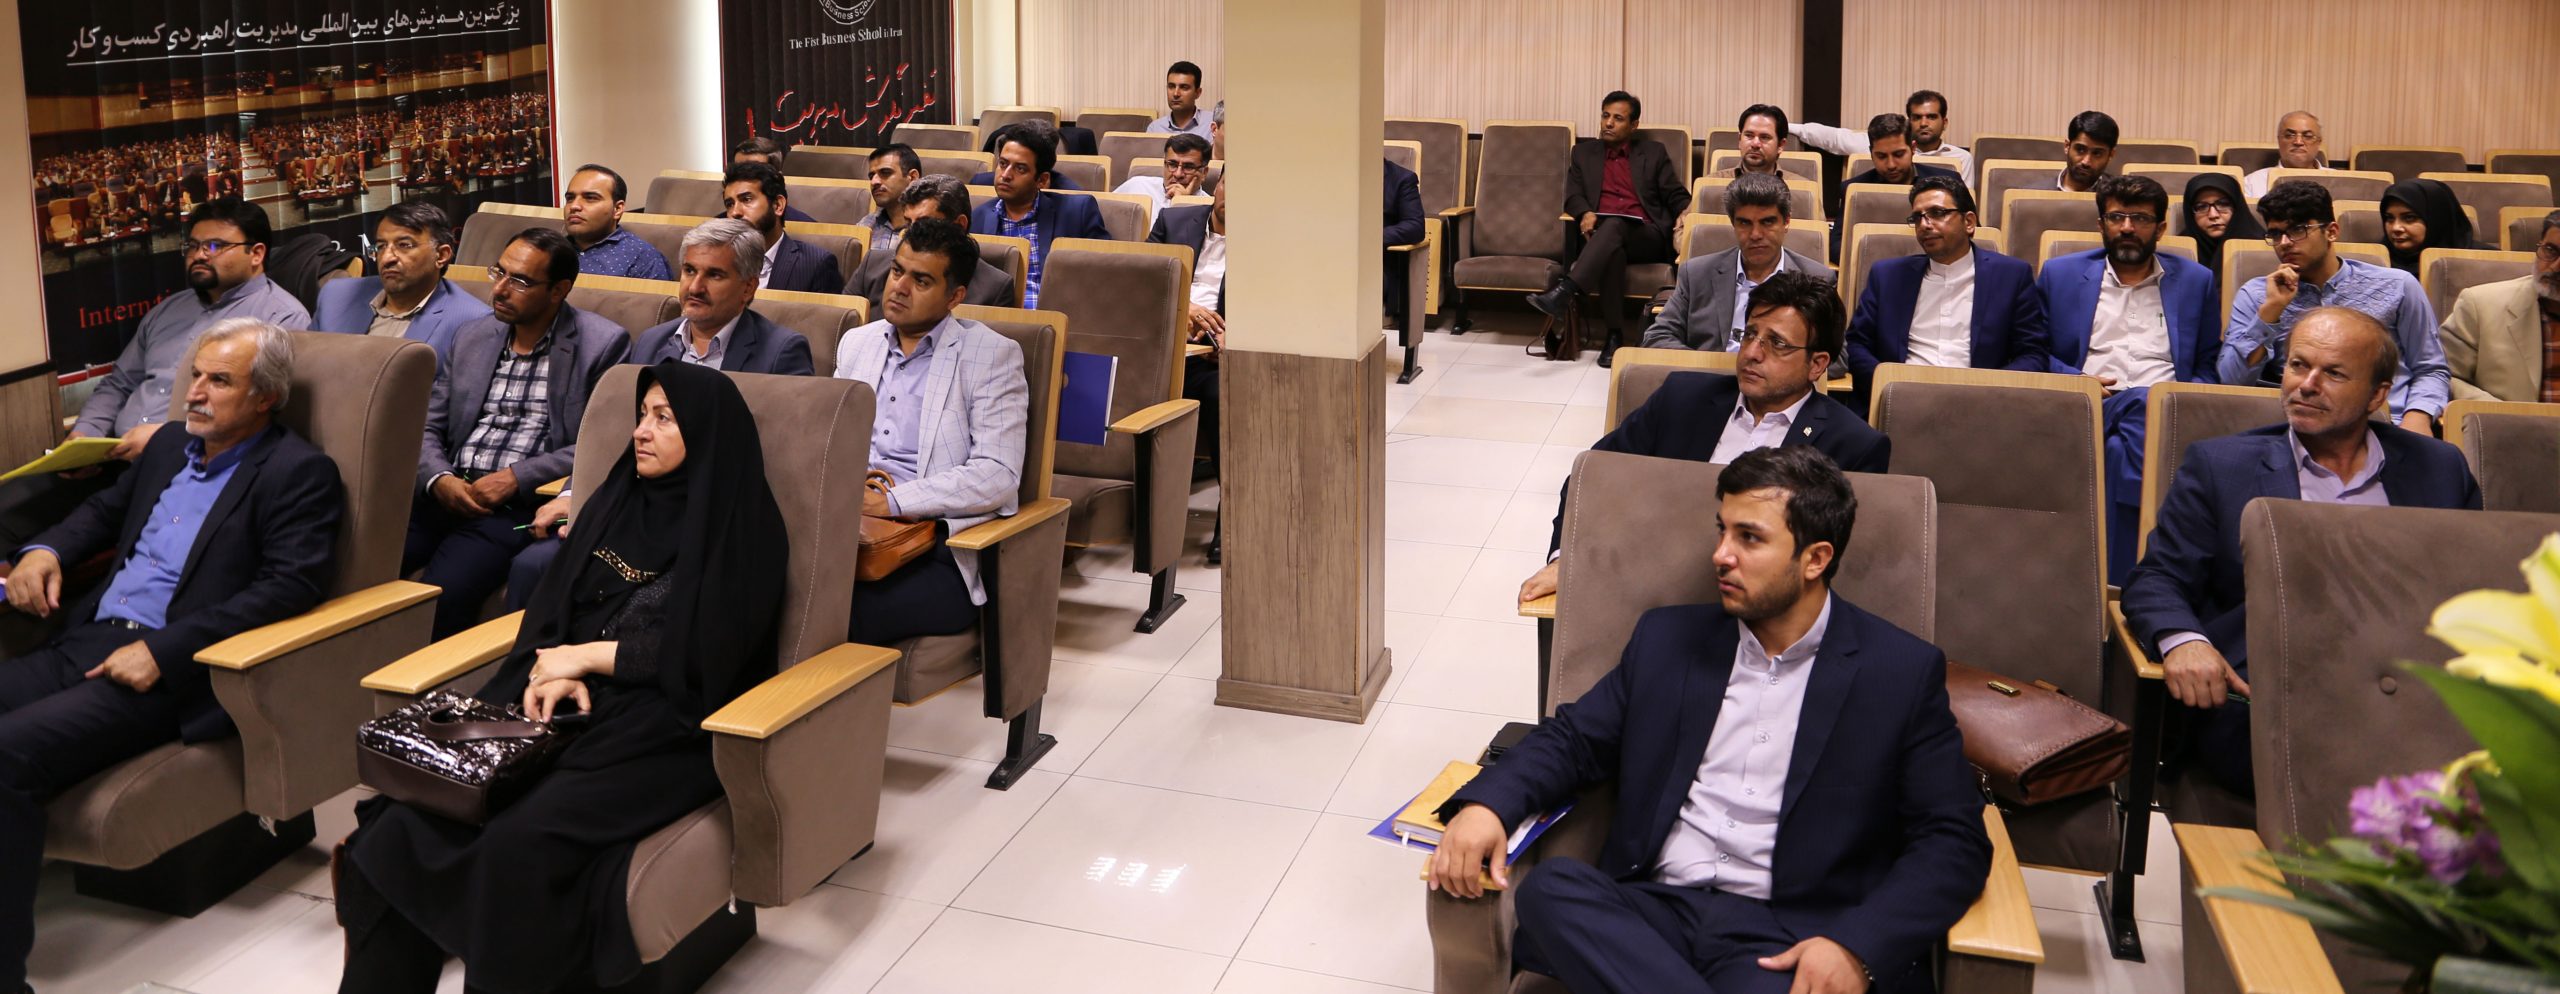 نشست مشاوران عالی نمایندگان مجلس شورای اسلامی در مدرسه عالی کسب و کار ماهان